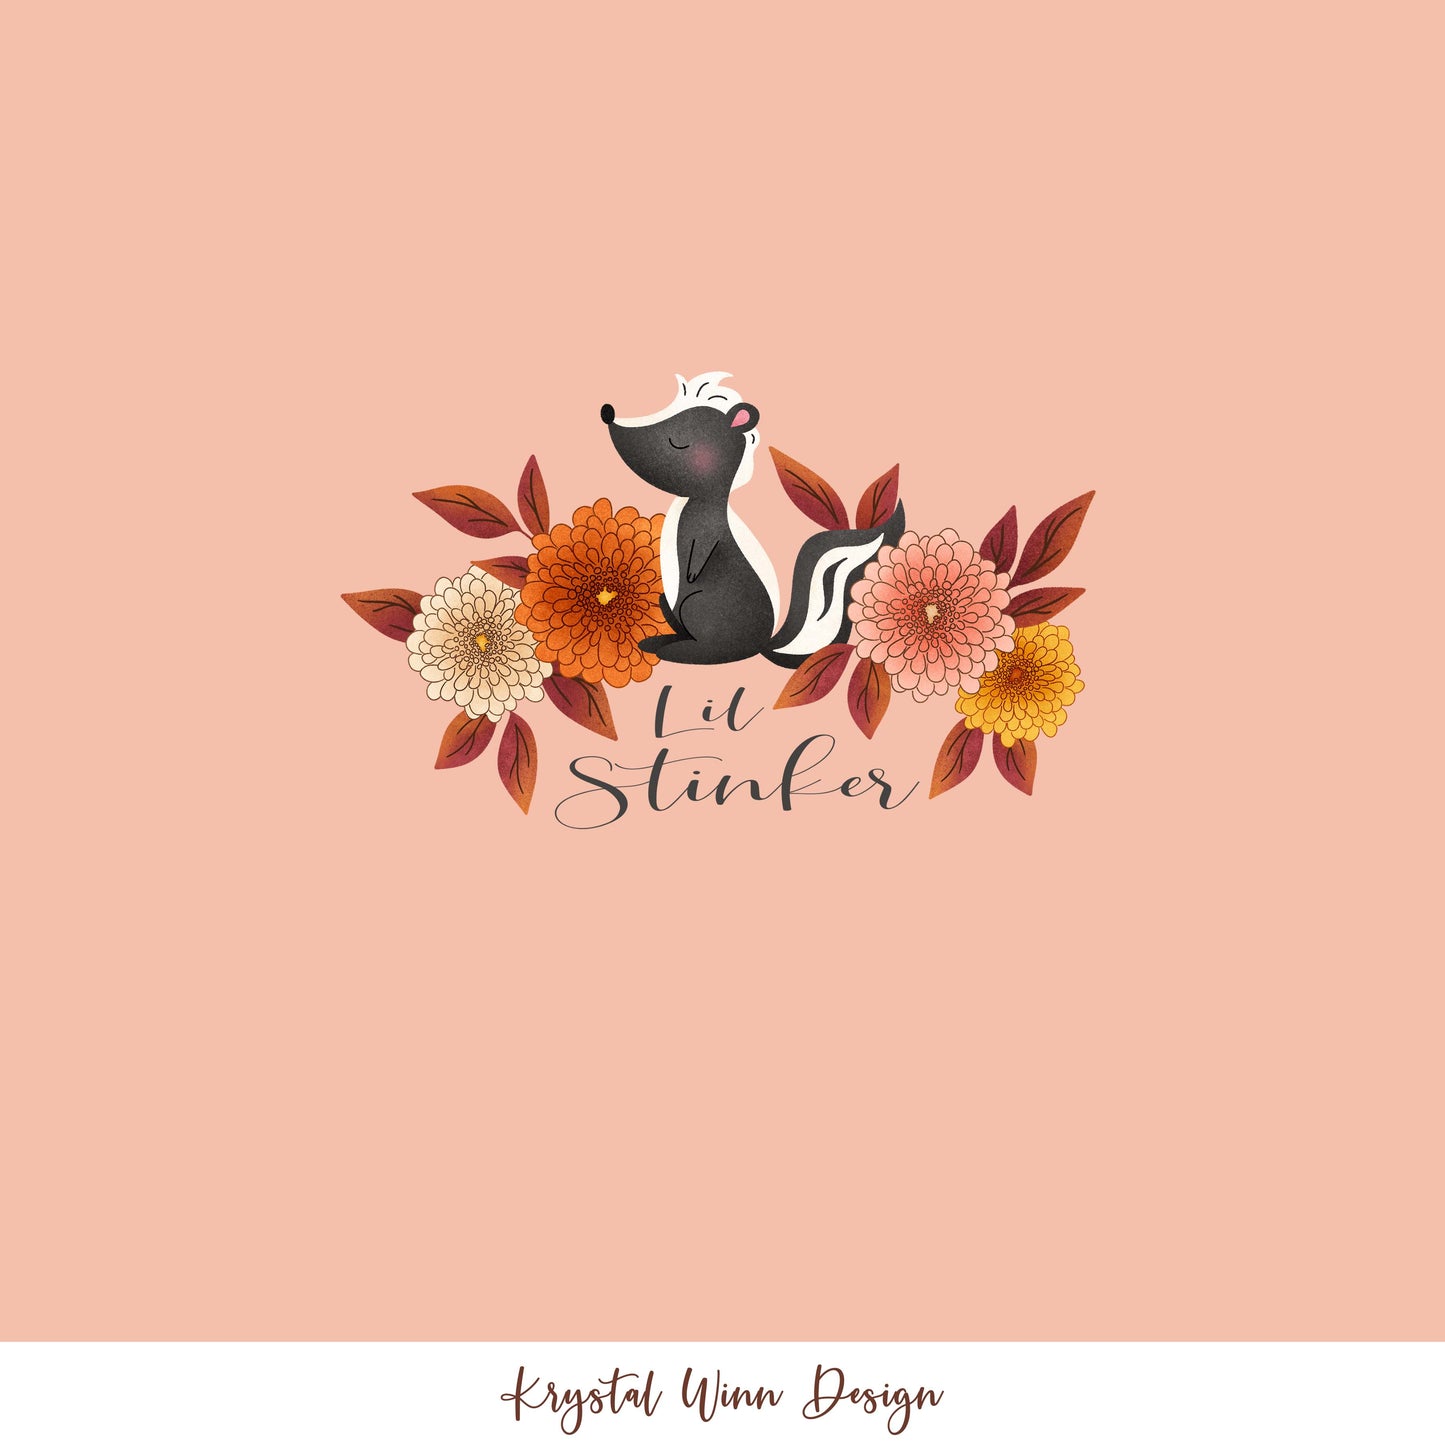 Fall Y'all Panel - Little Stinker Flowers KW107